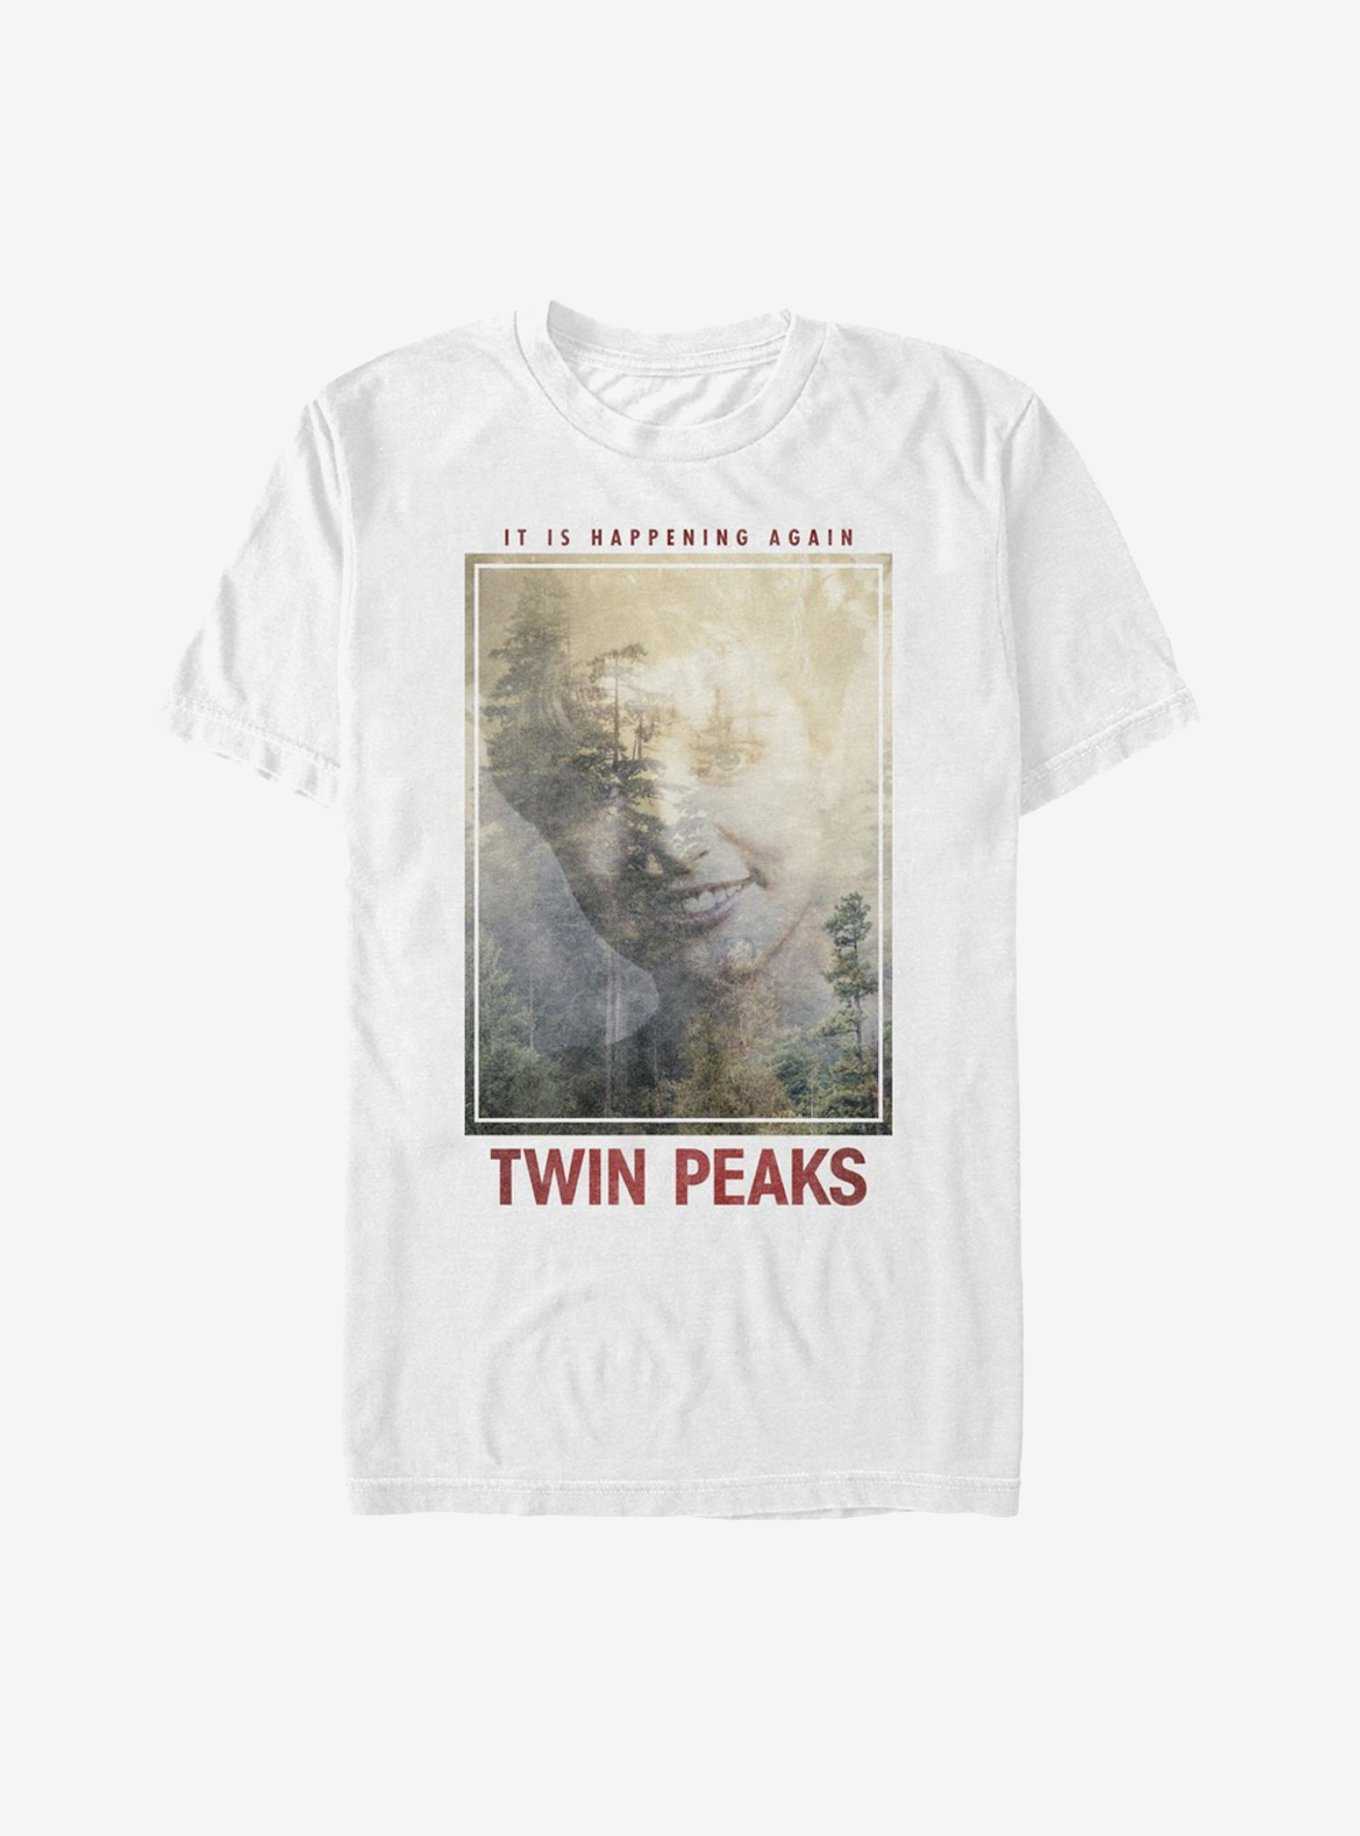 Twin Peaks Happening Again T-Shirt, , hi-res